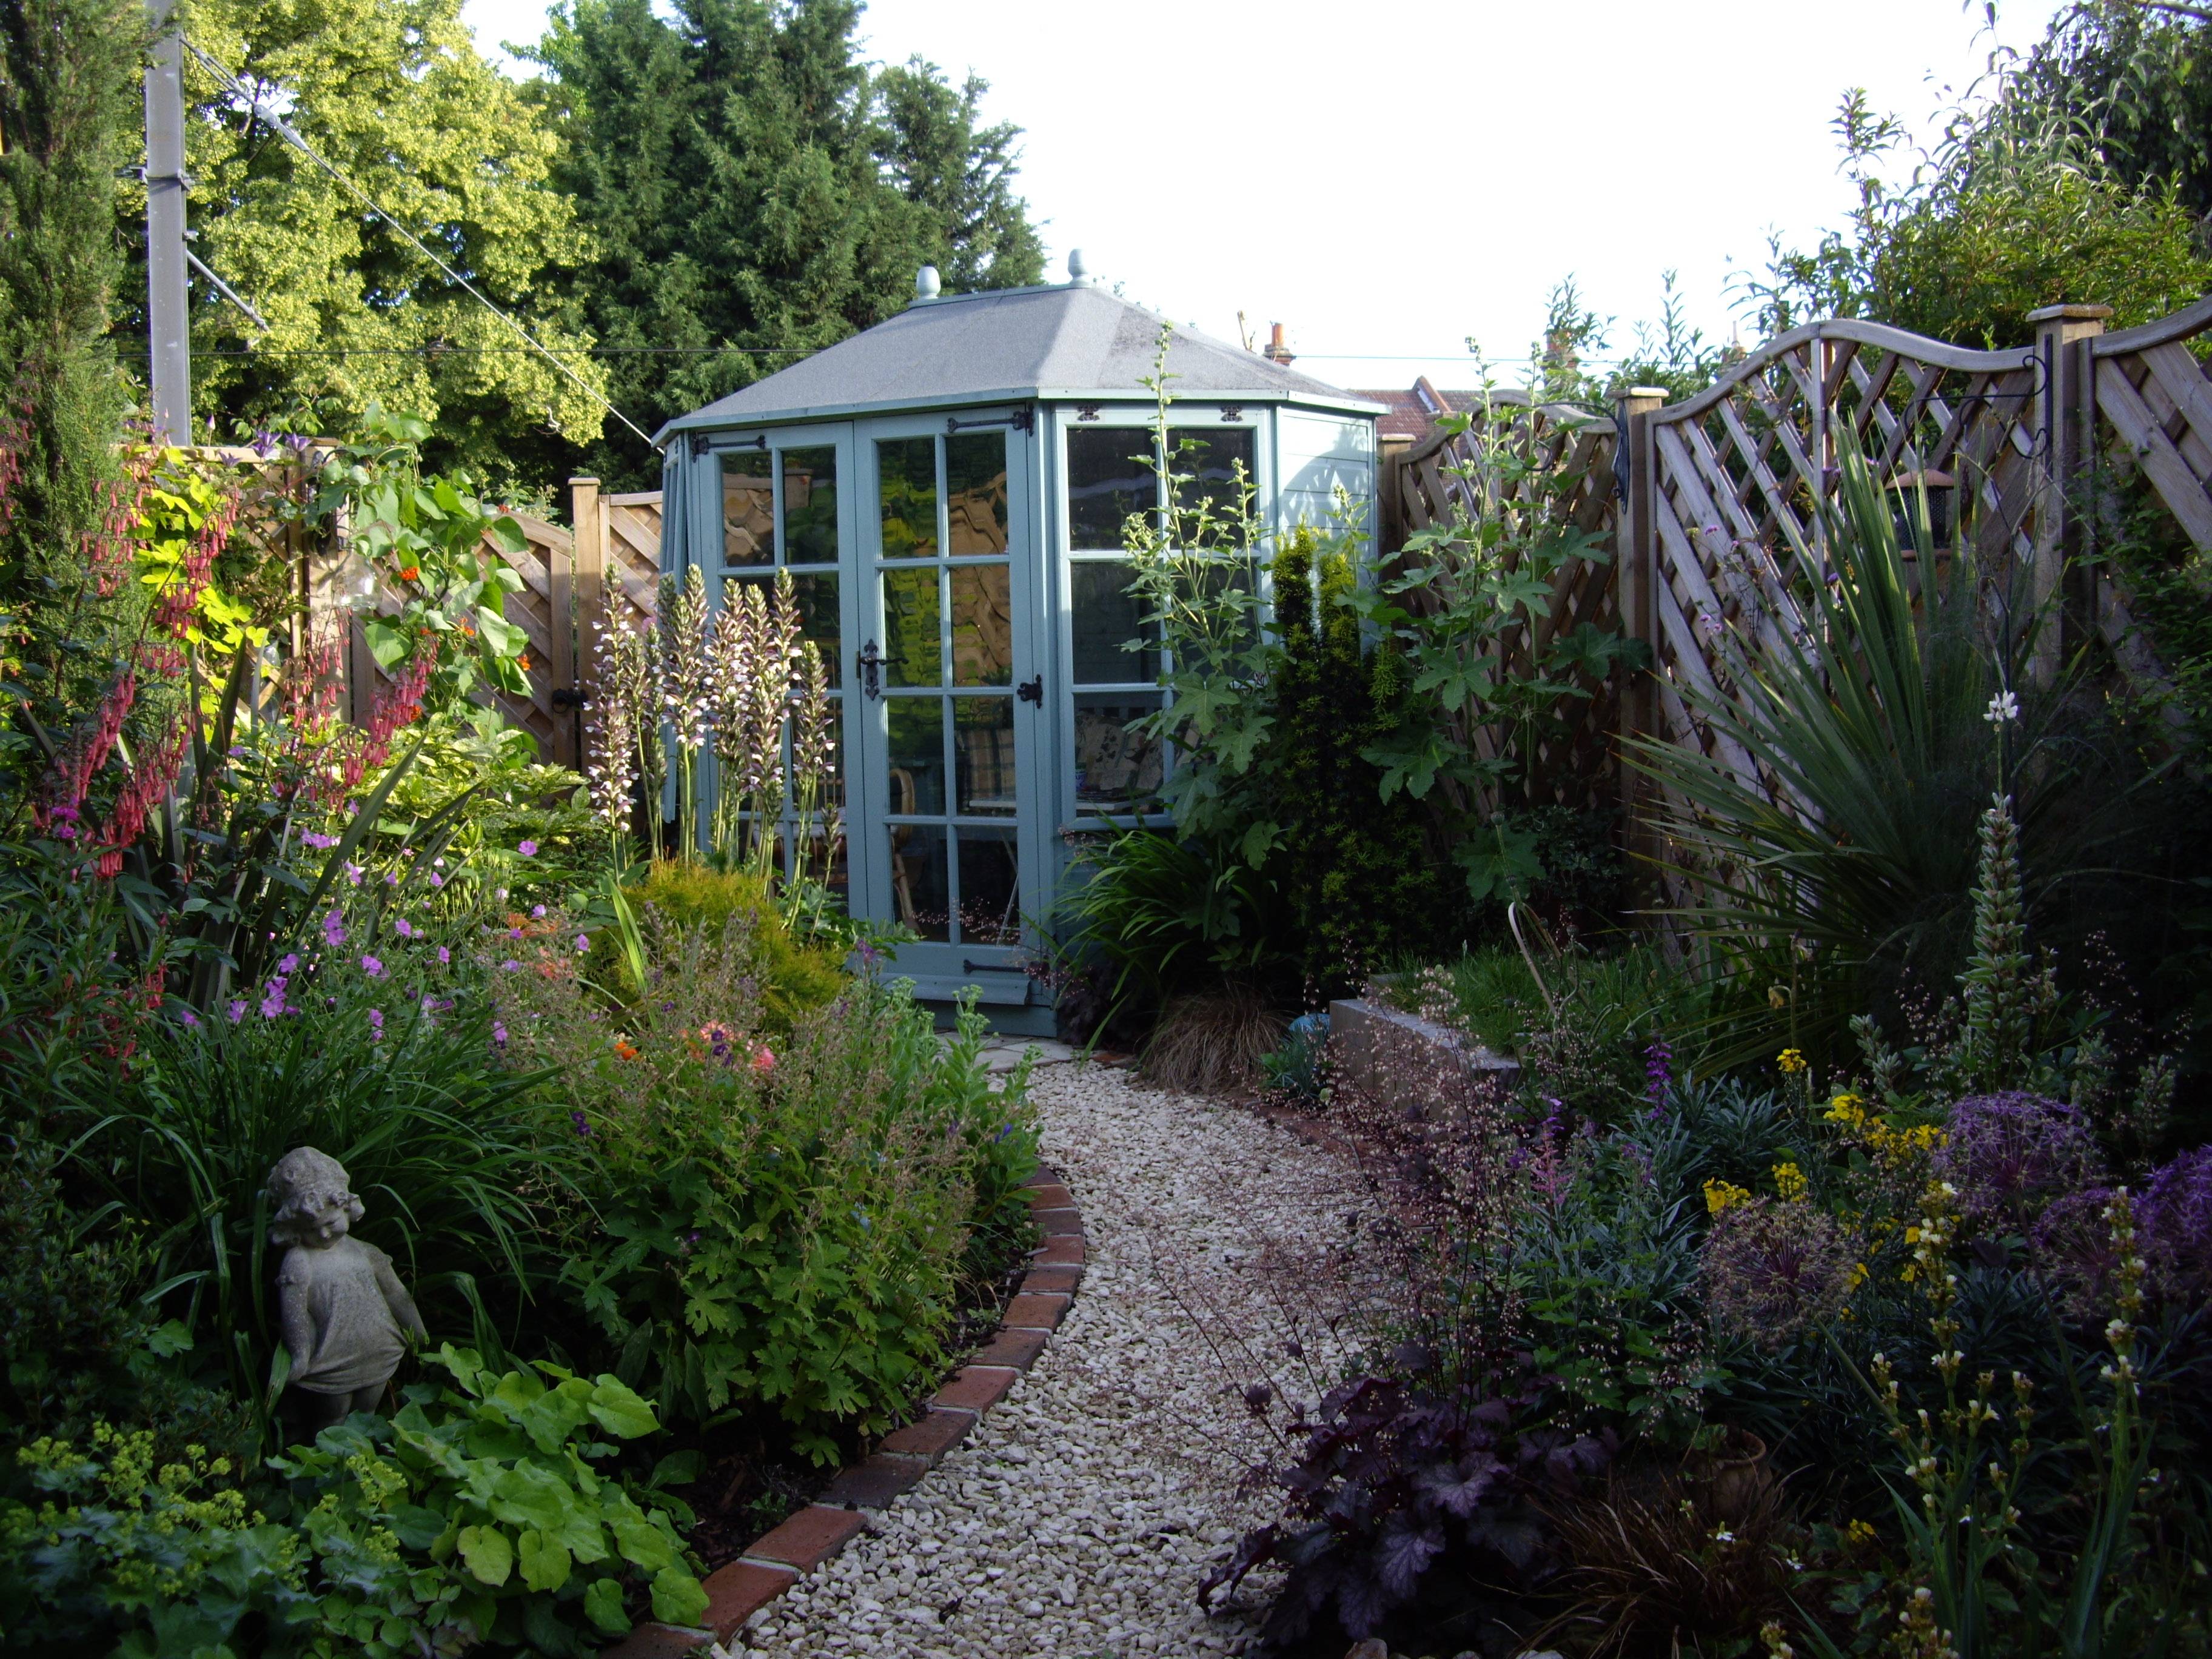 Small Terraced Front Garden Ideas